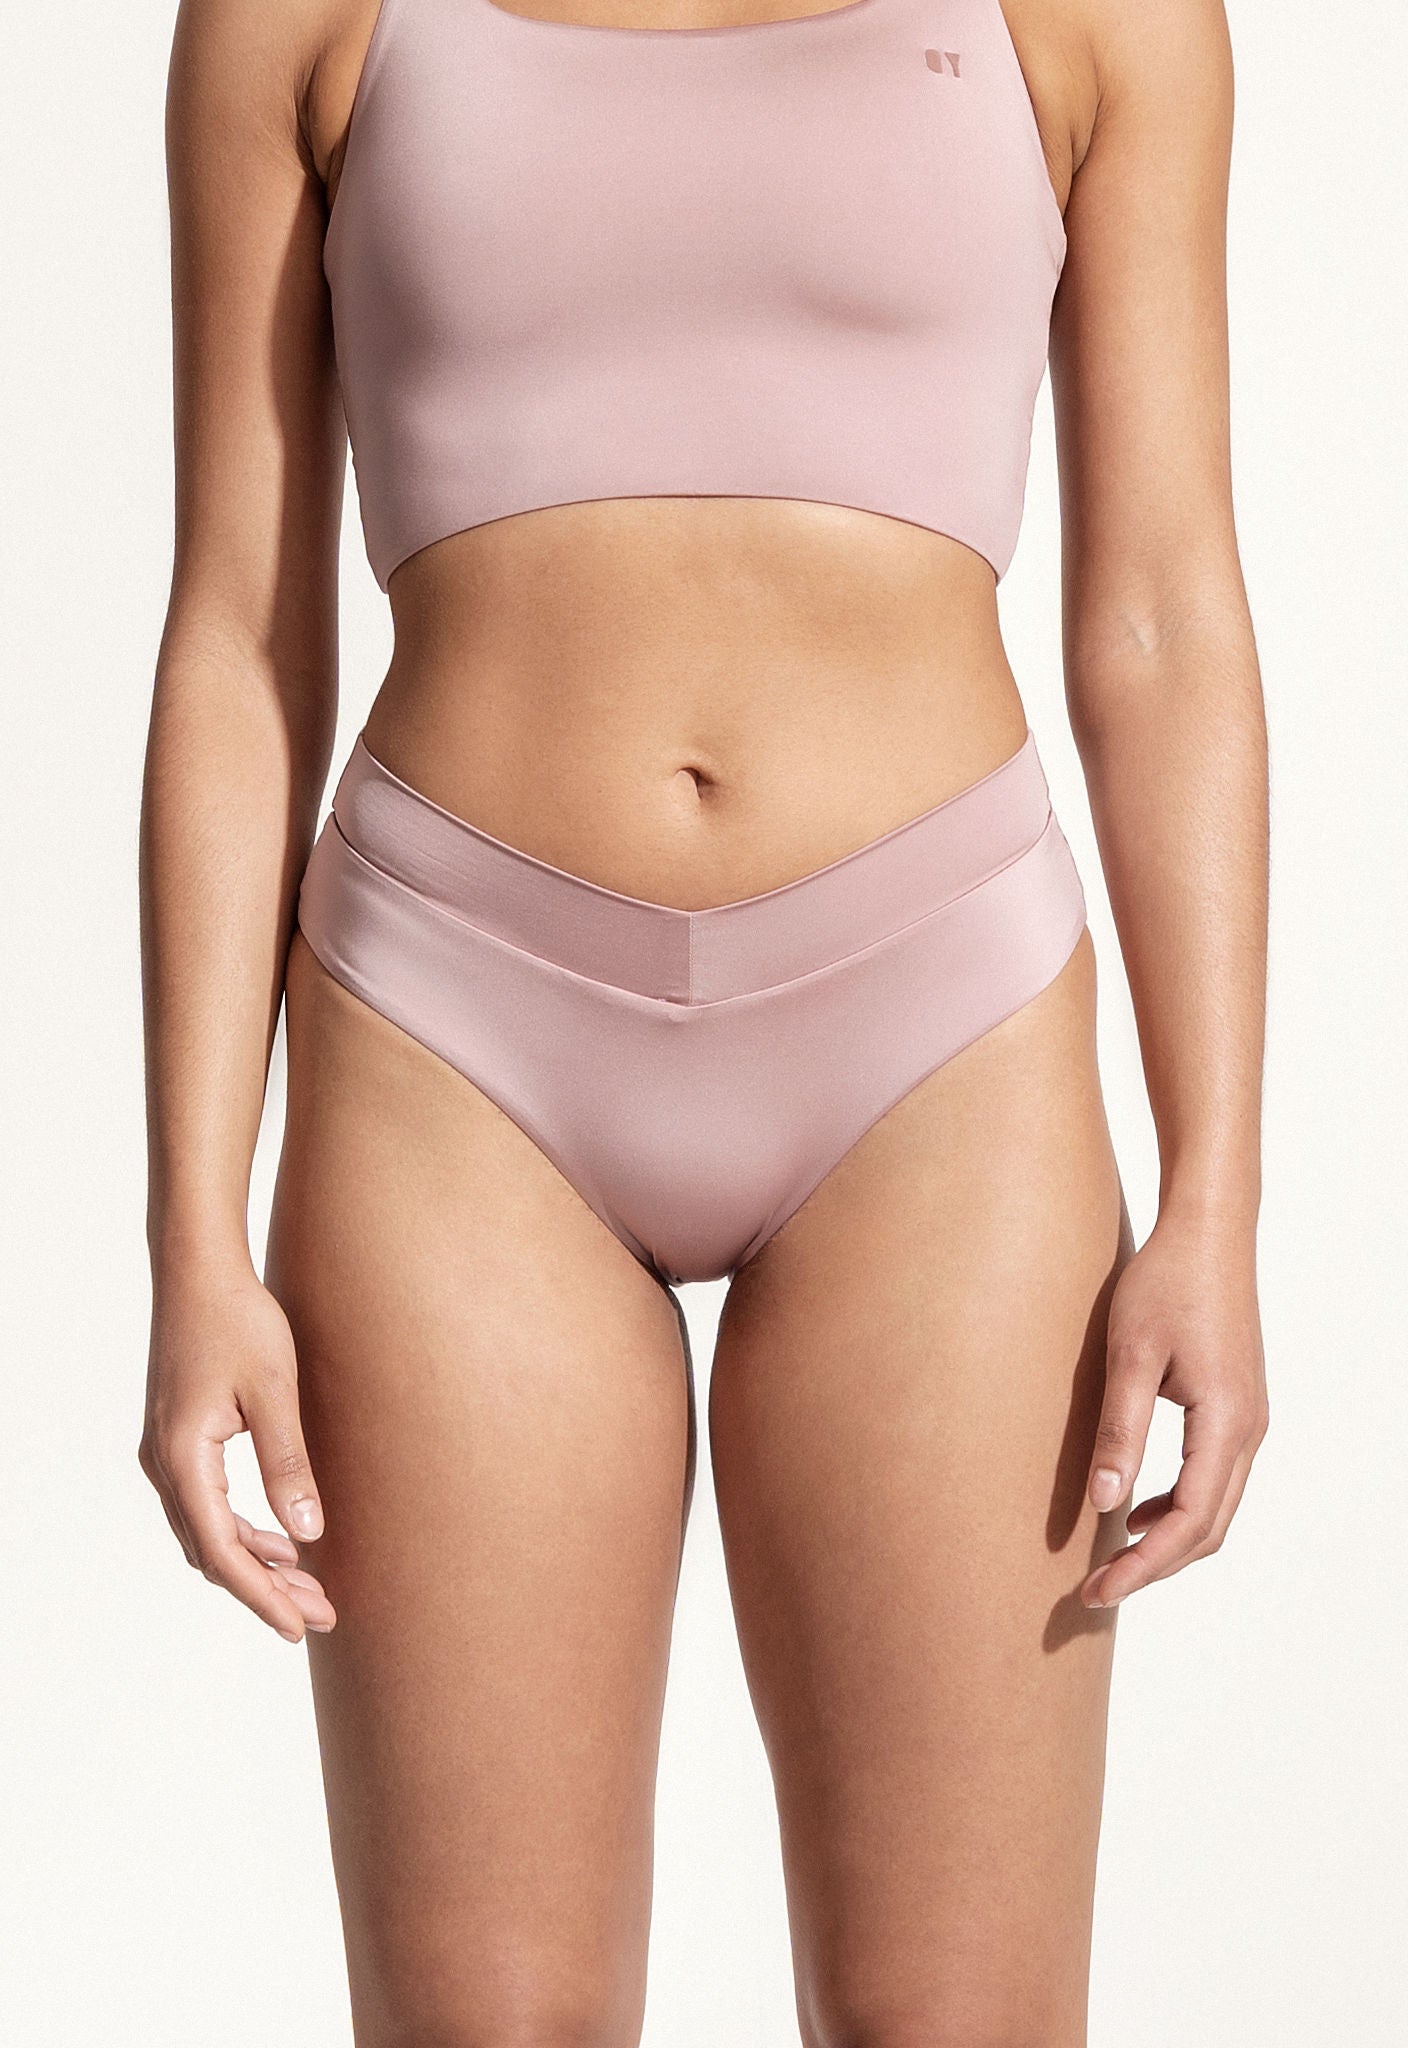 Bikini Bottom "Malaga" in virginia pink